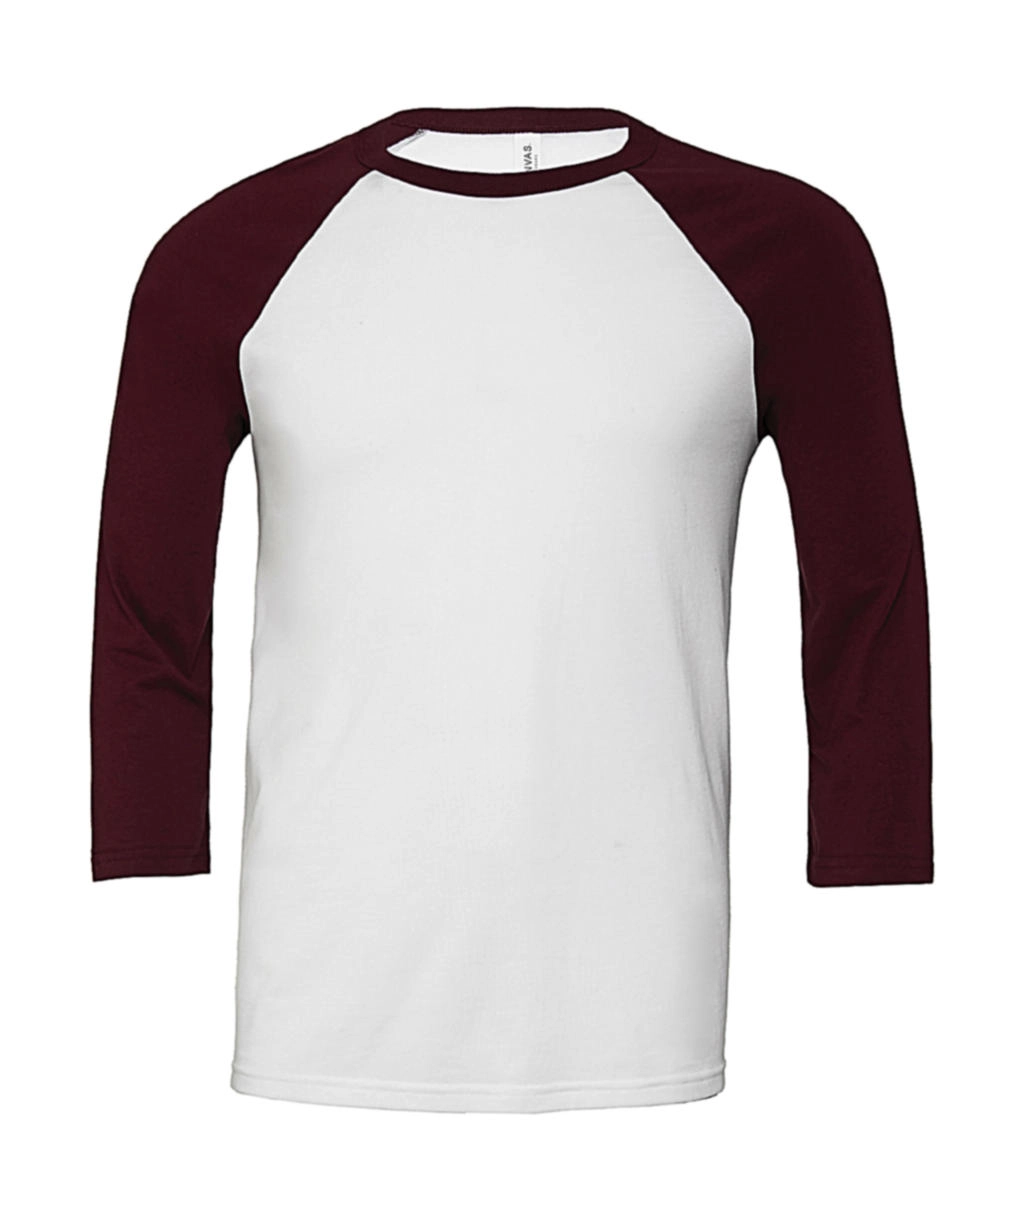 Unisex 3/4 Sleeve Baseball T-Shirt zum Besticken und Bedrucken in der Farbe White/Maroon mit Ihren Logo, Schriftzug oder Motiv.